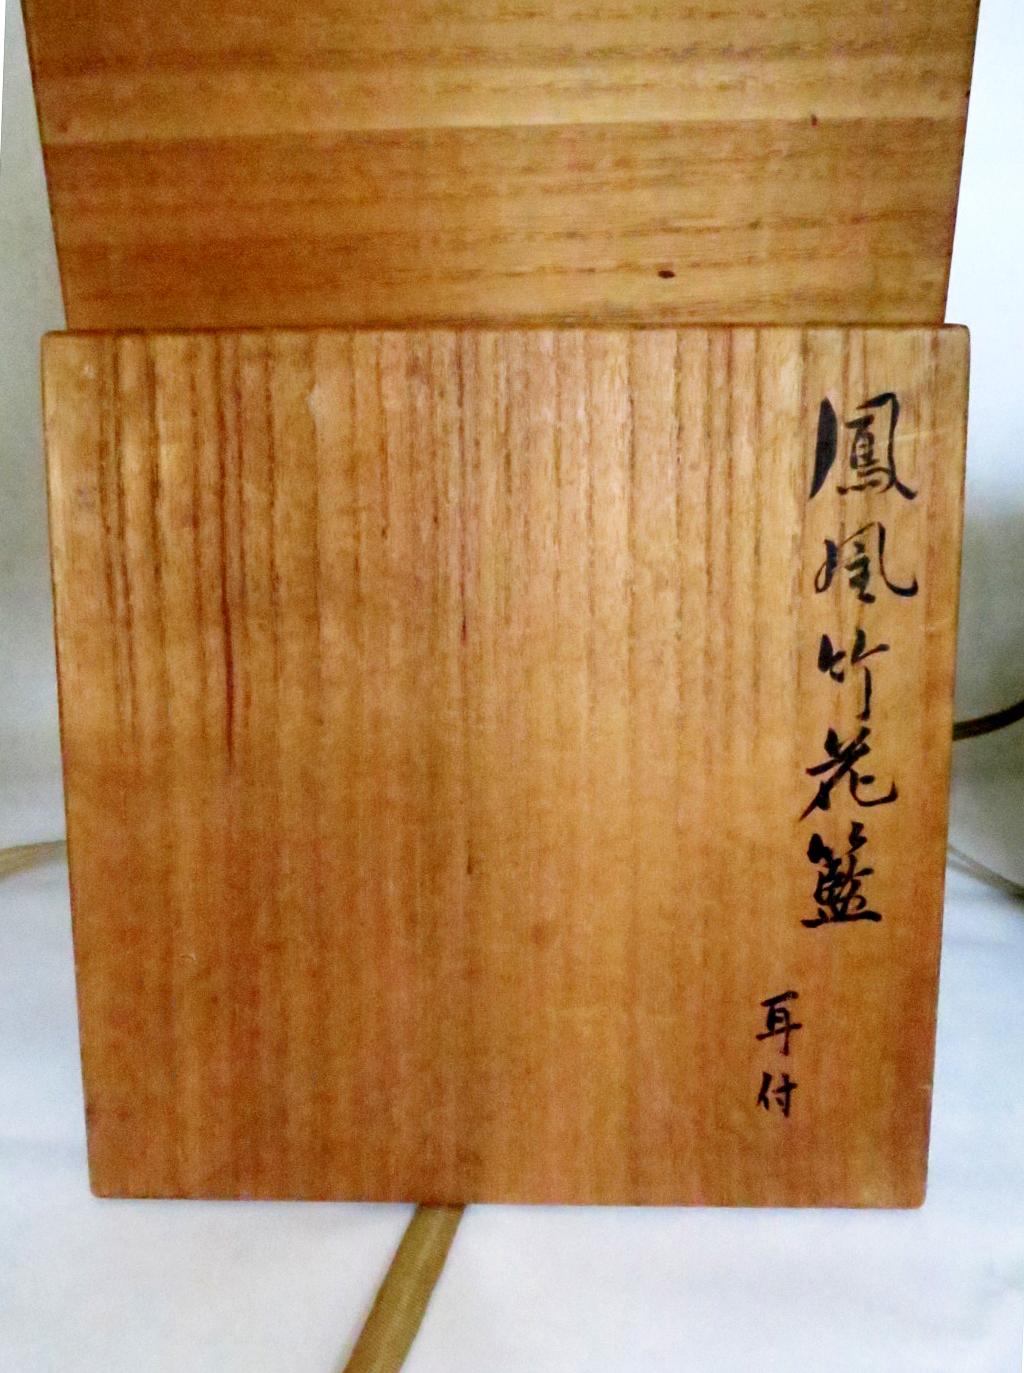 Japanese Bamboo Basket Ikebana by Hayakawa Shokosai IV For Sale 7